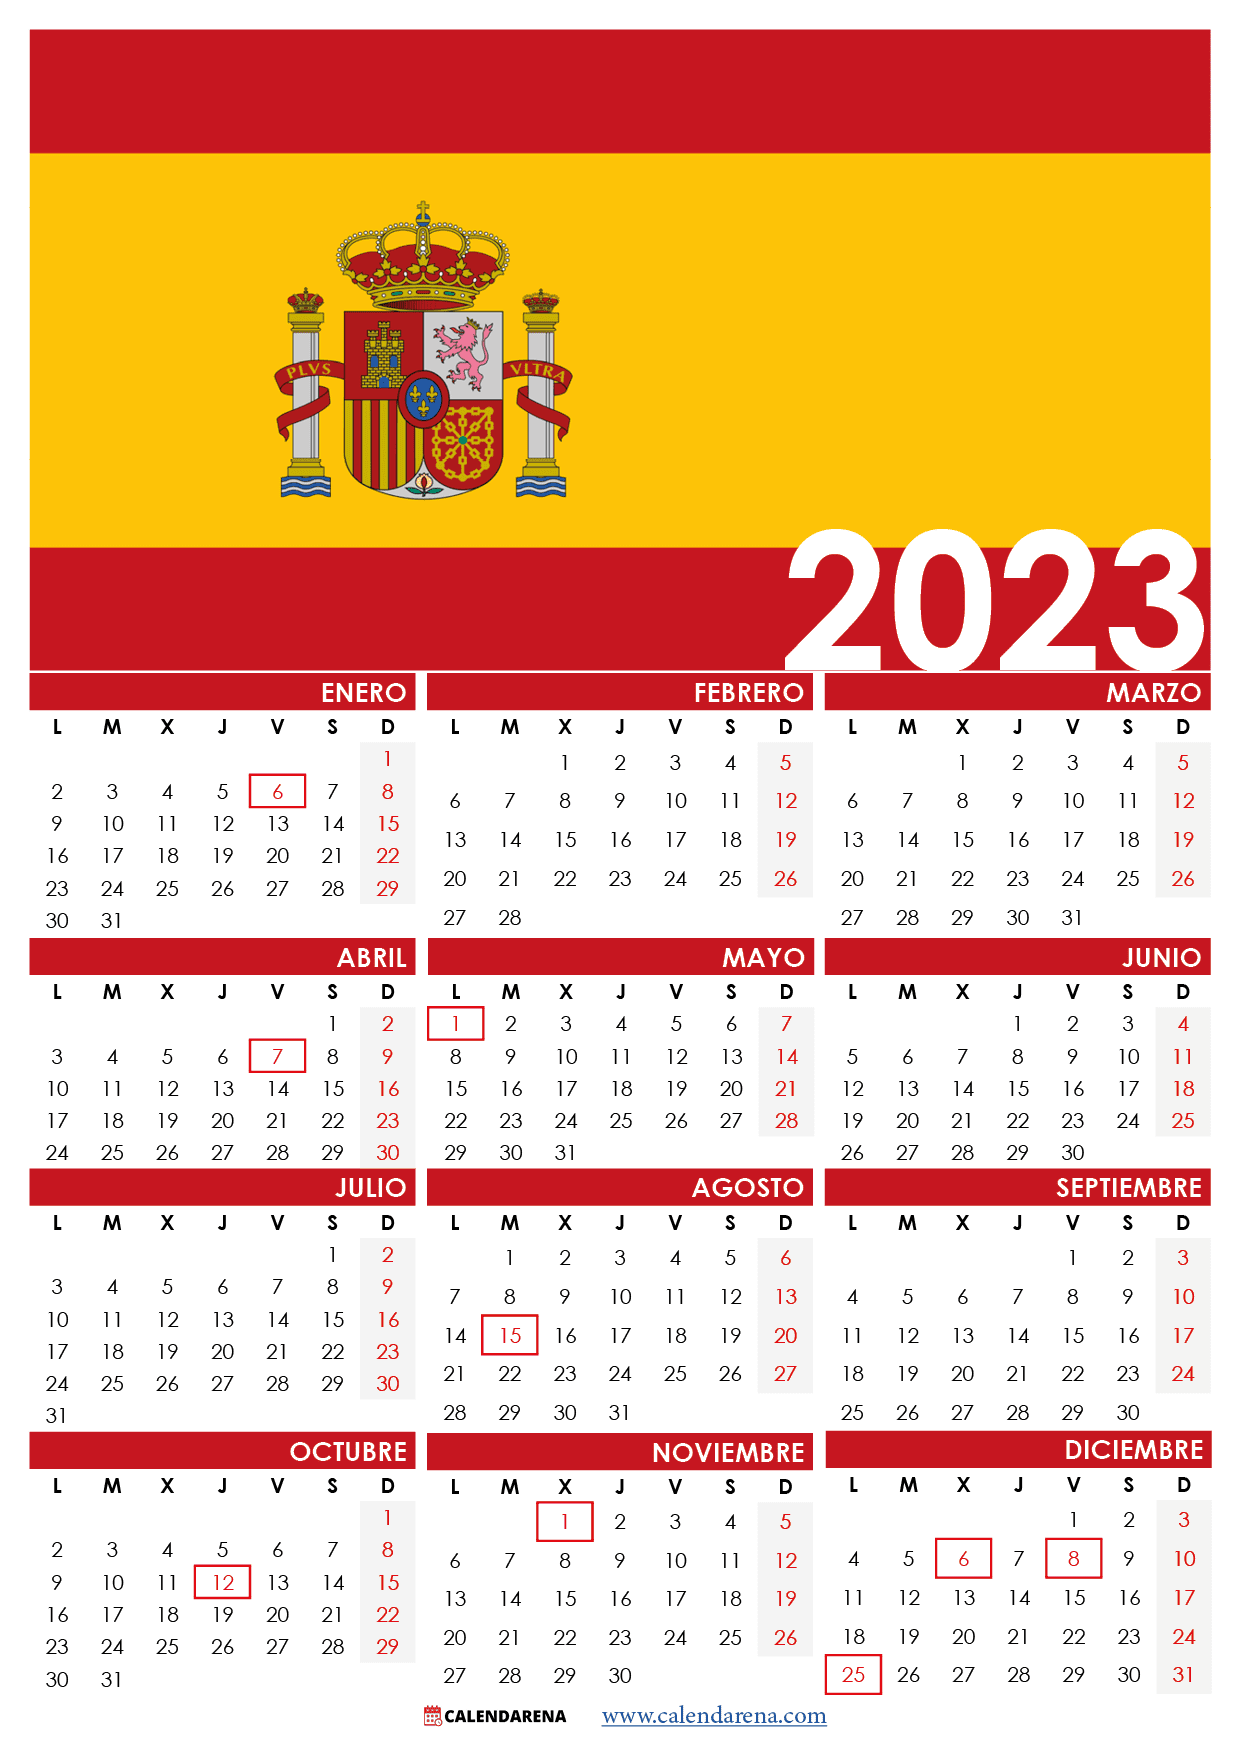 calendario-dias-festivos-2023-imagesee